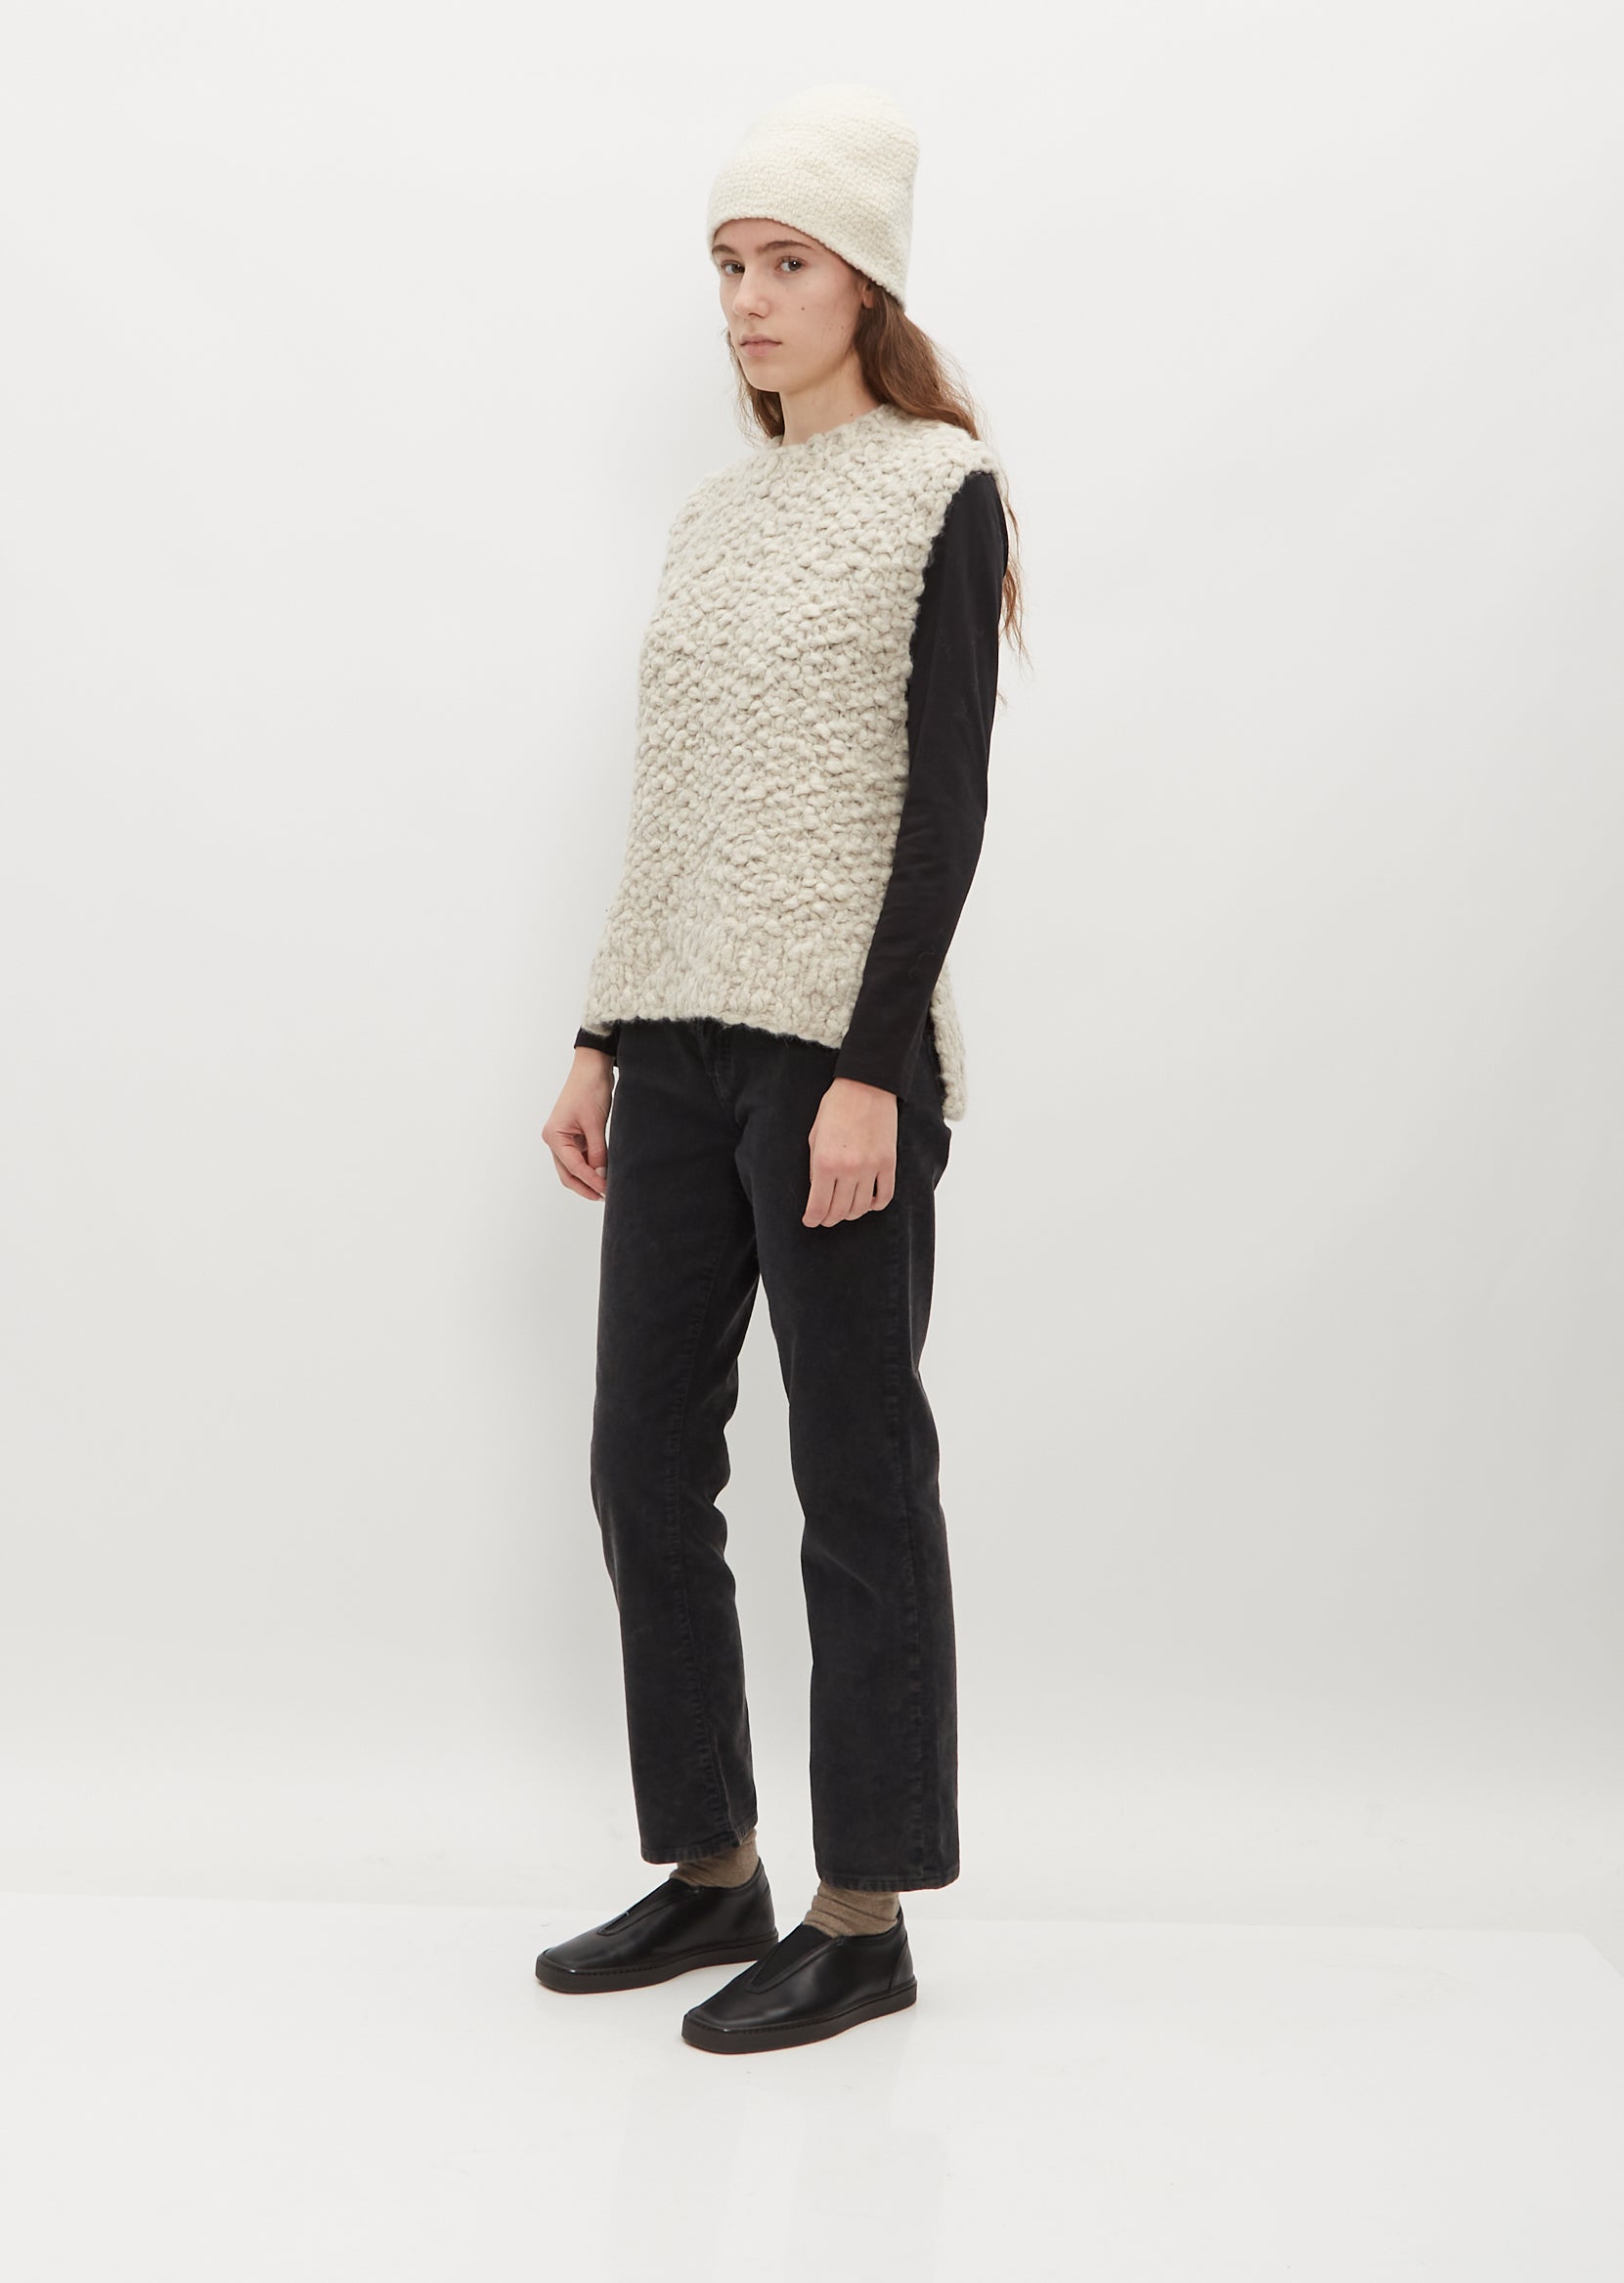 Shop Lauren Manoogian Crochet Toque In Raw White